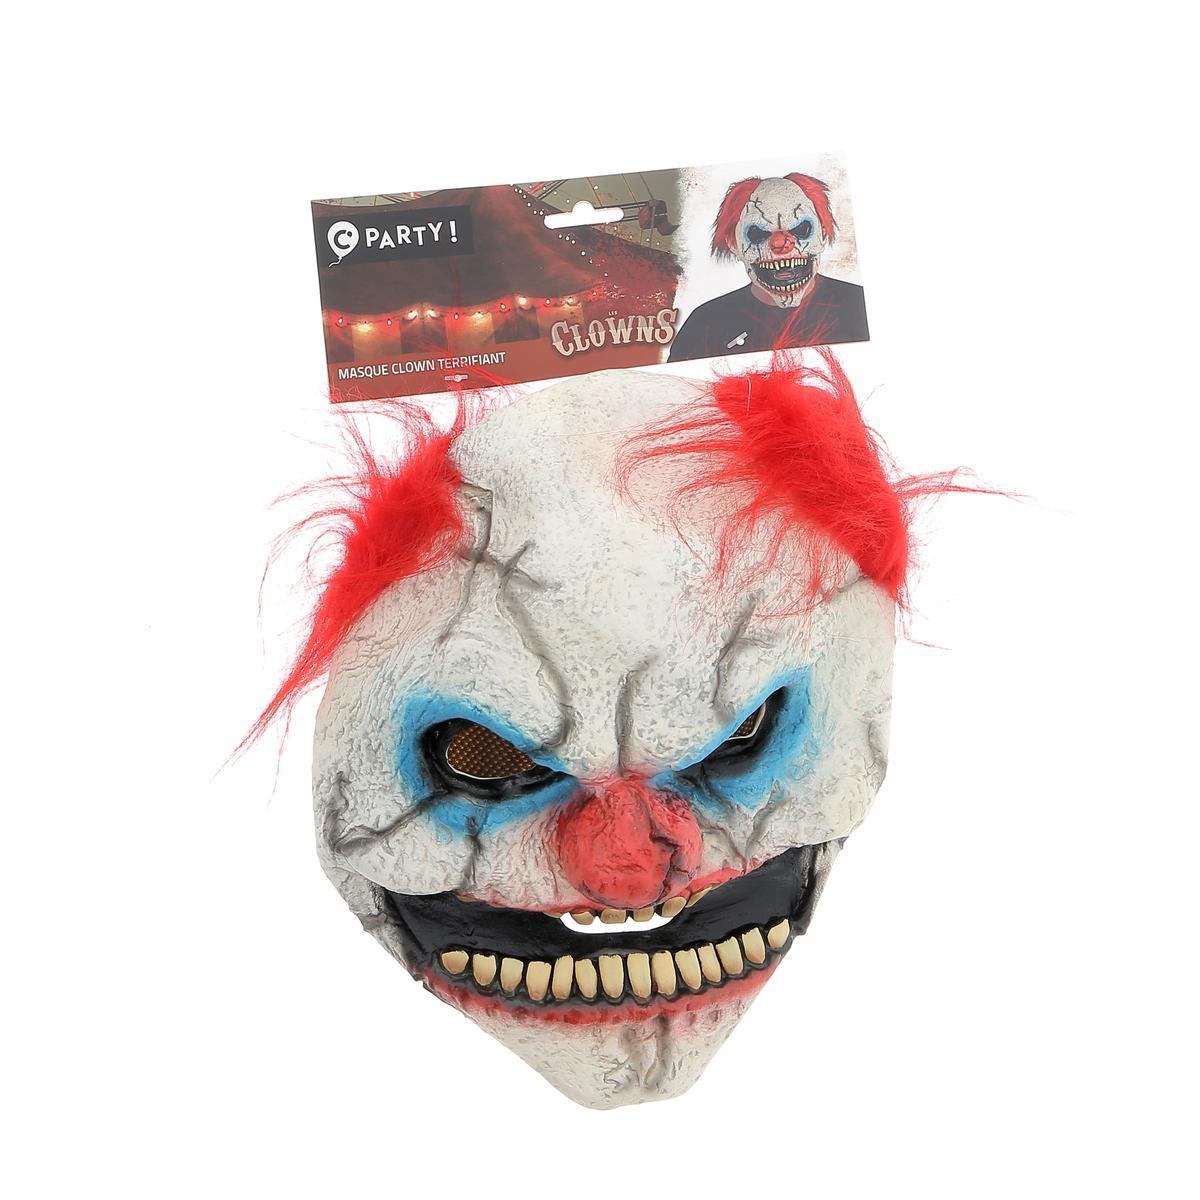 Masque de clown - Taille unique adulte - C'PARTY